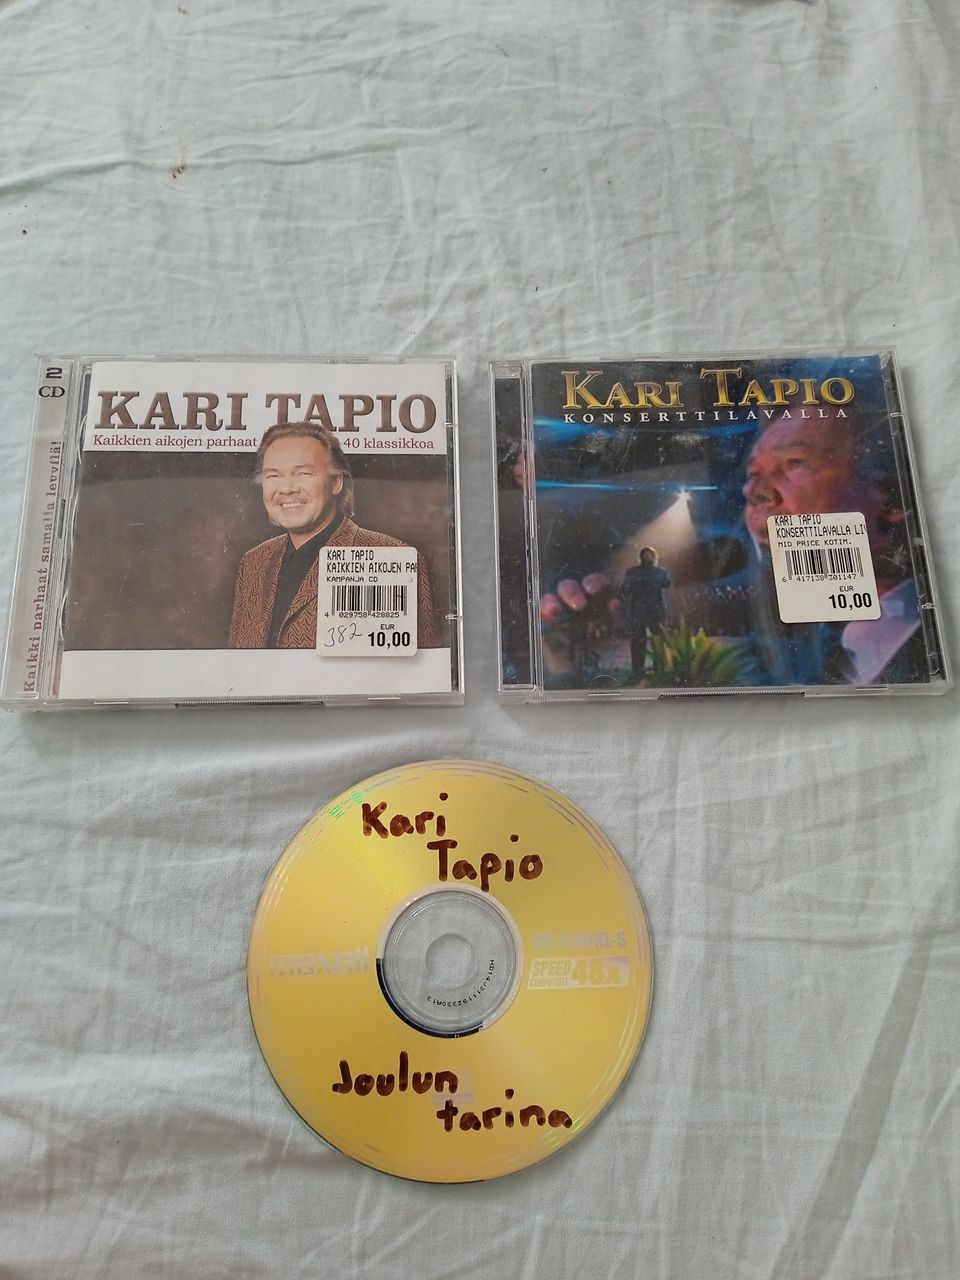 Kari Tapio 3 kpl CD